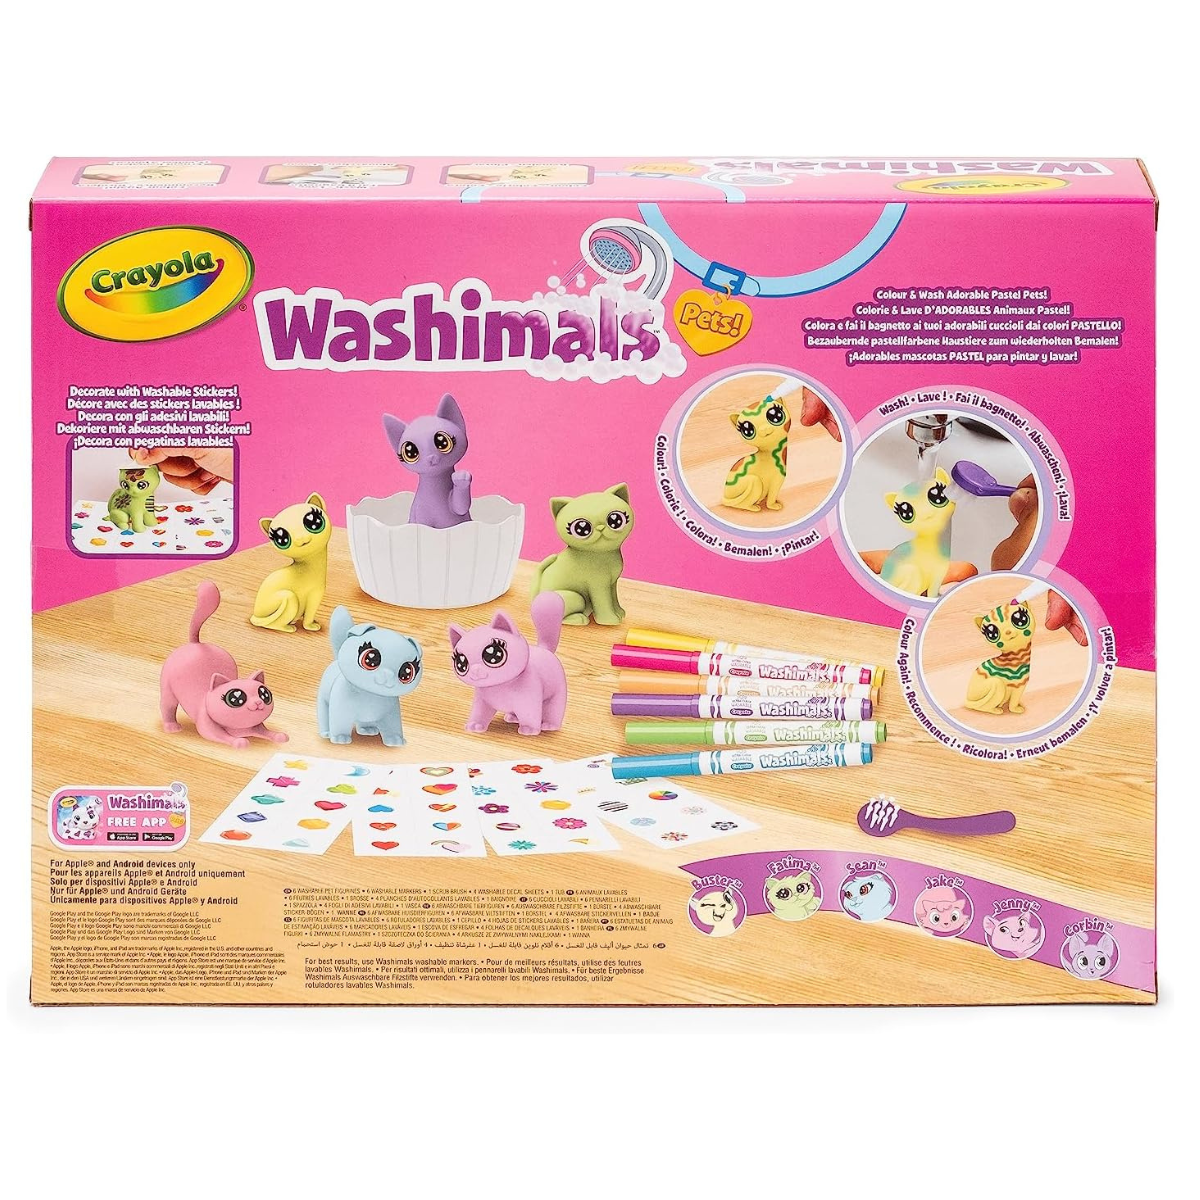 Crayola washimals set - special edition colori pastel - Toys Center